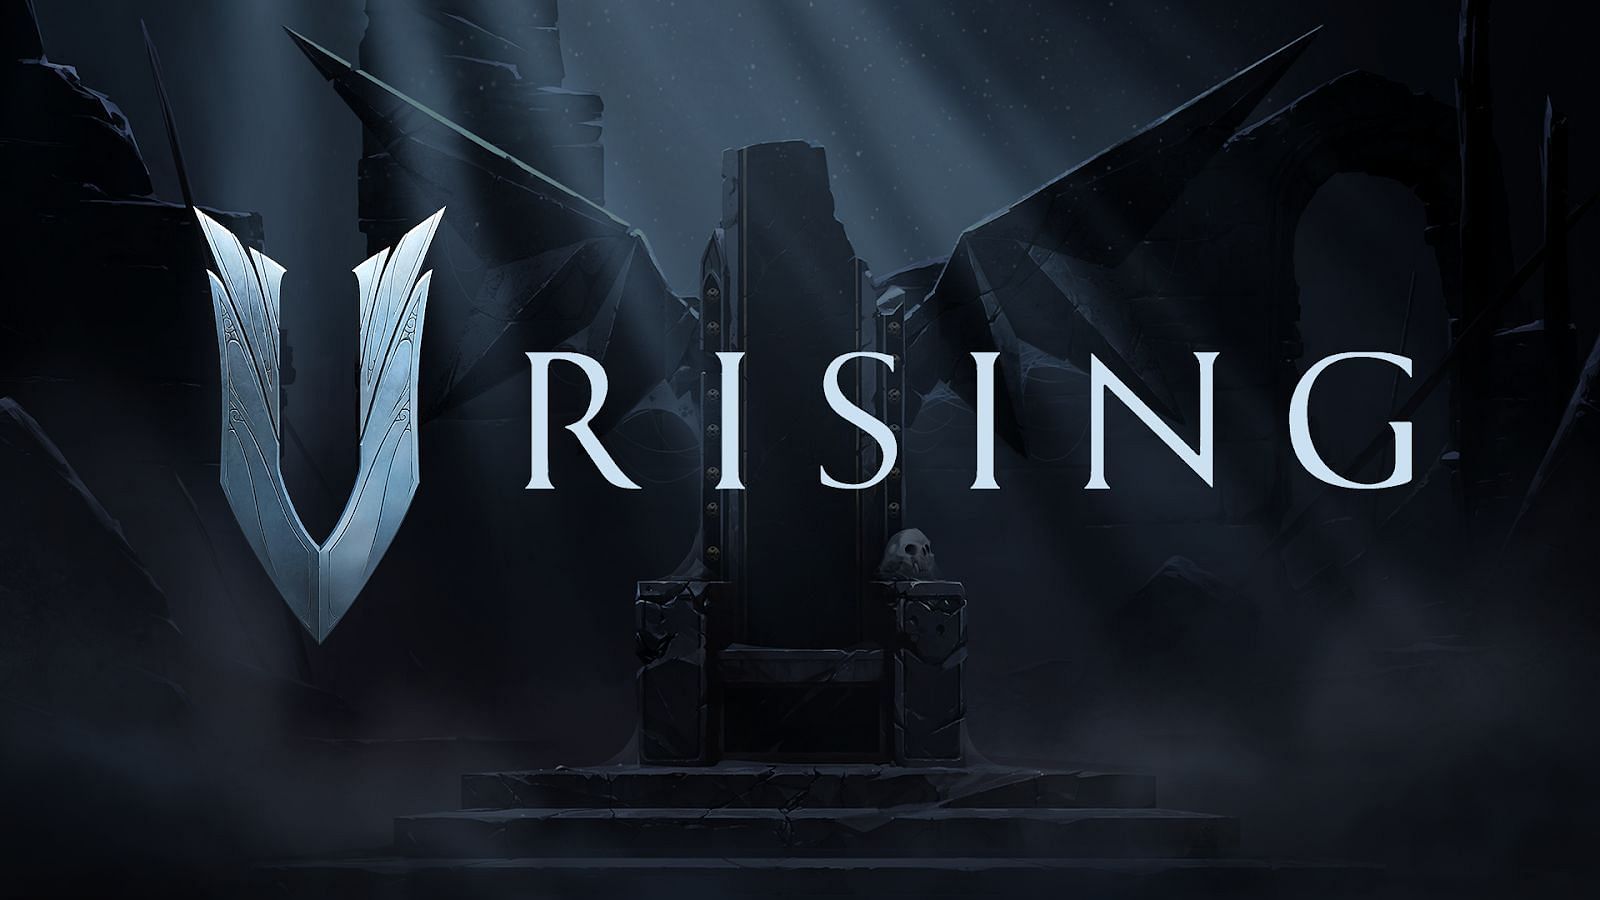 Official artwork for V Rising (Image via Stunlock Studios)